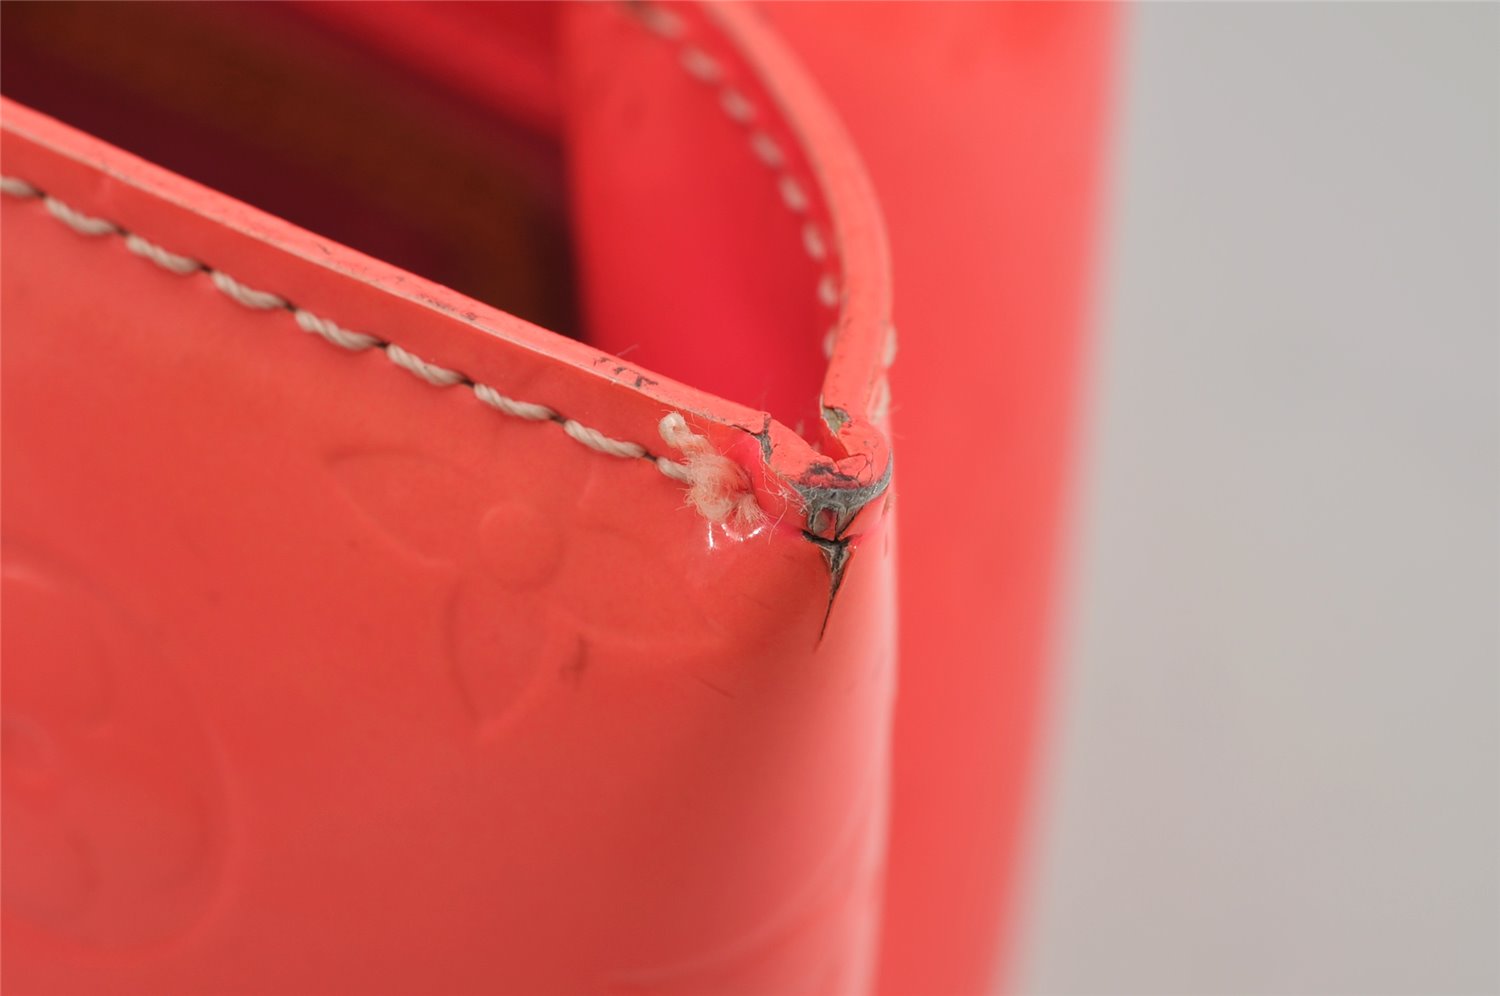 Authentic Louis Vuitton Vernis Fluo Reade PM Hand Bag Pink M91903 LV Junk 0584K